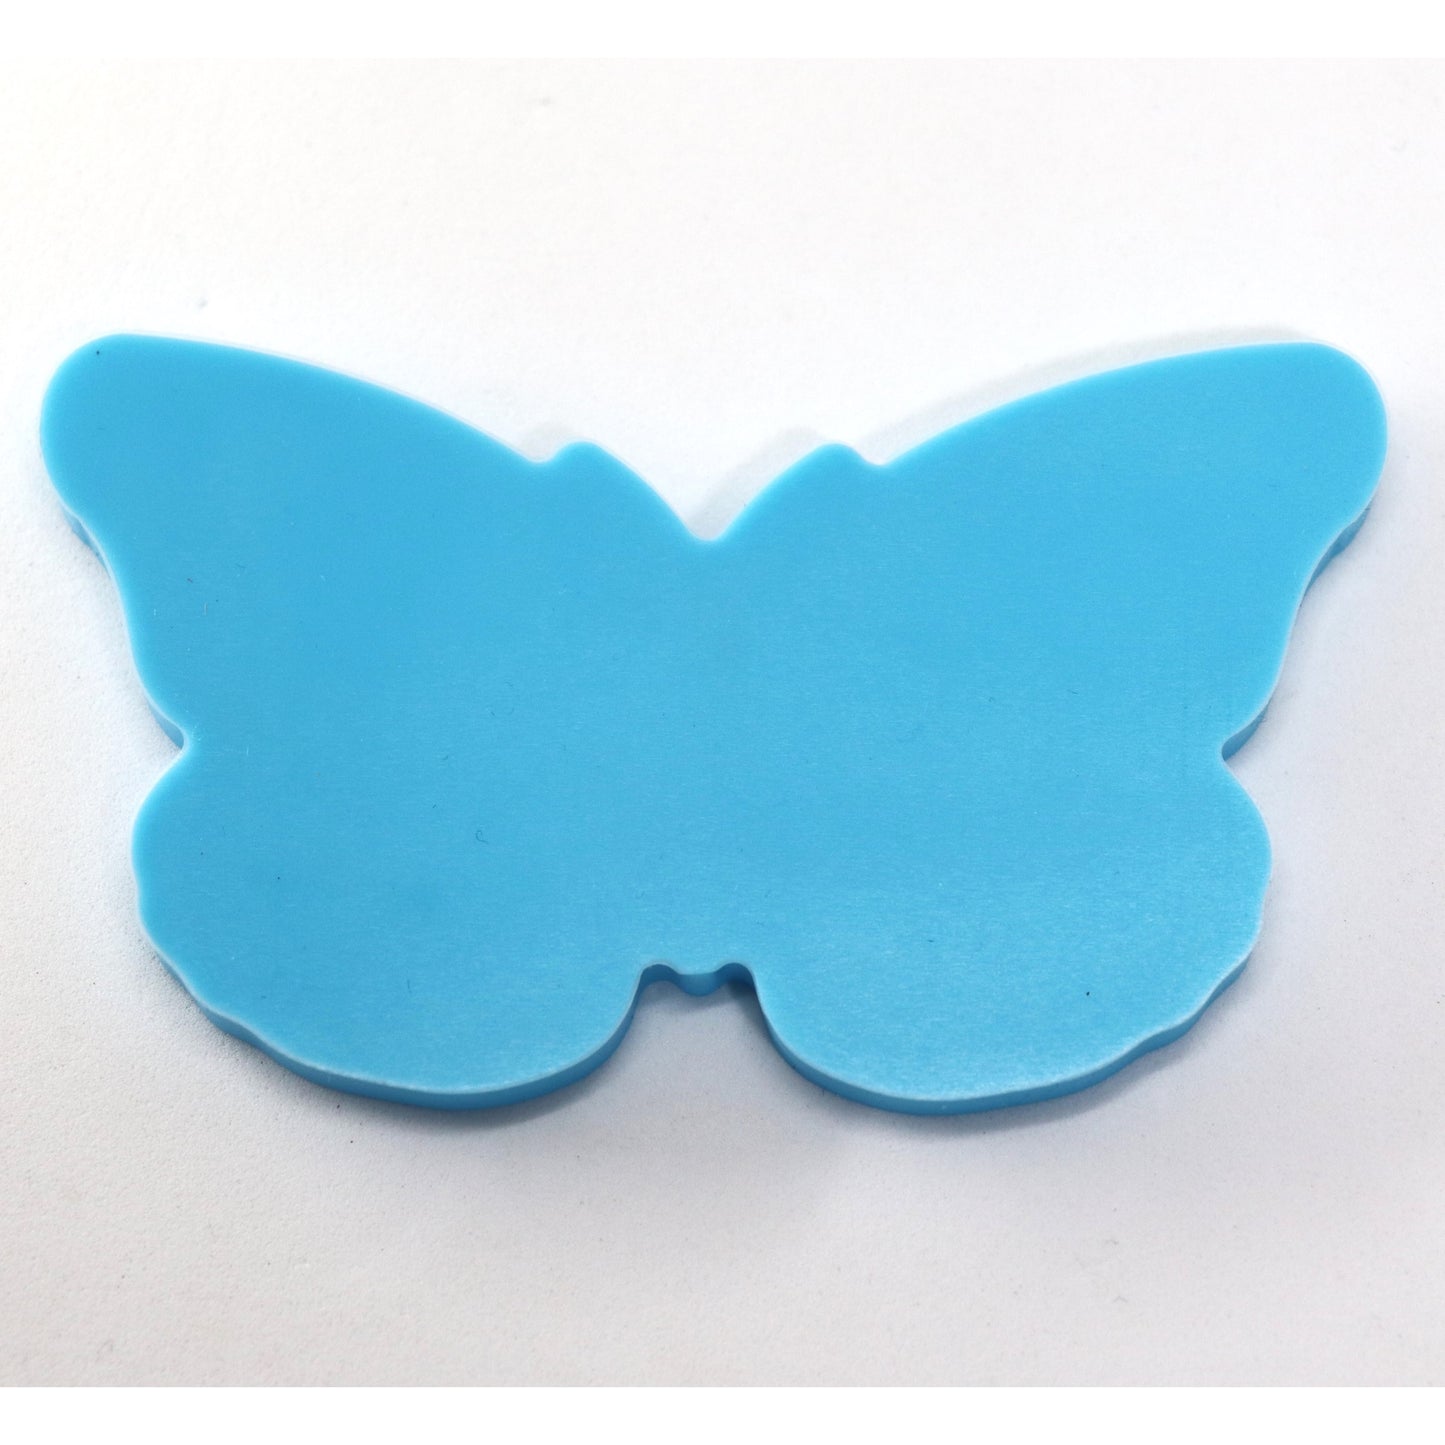 Schmetterling Silikonform Gießform Mold für Resin, Epoxidharz ca. 9 x 4,5 cm